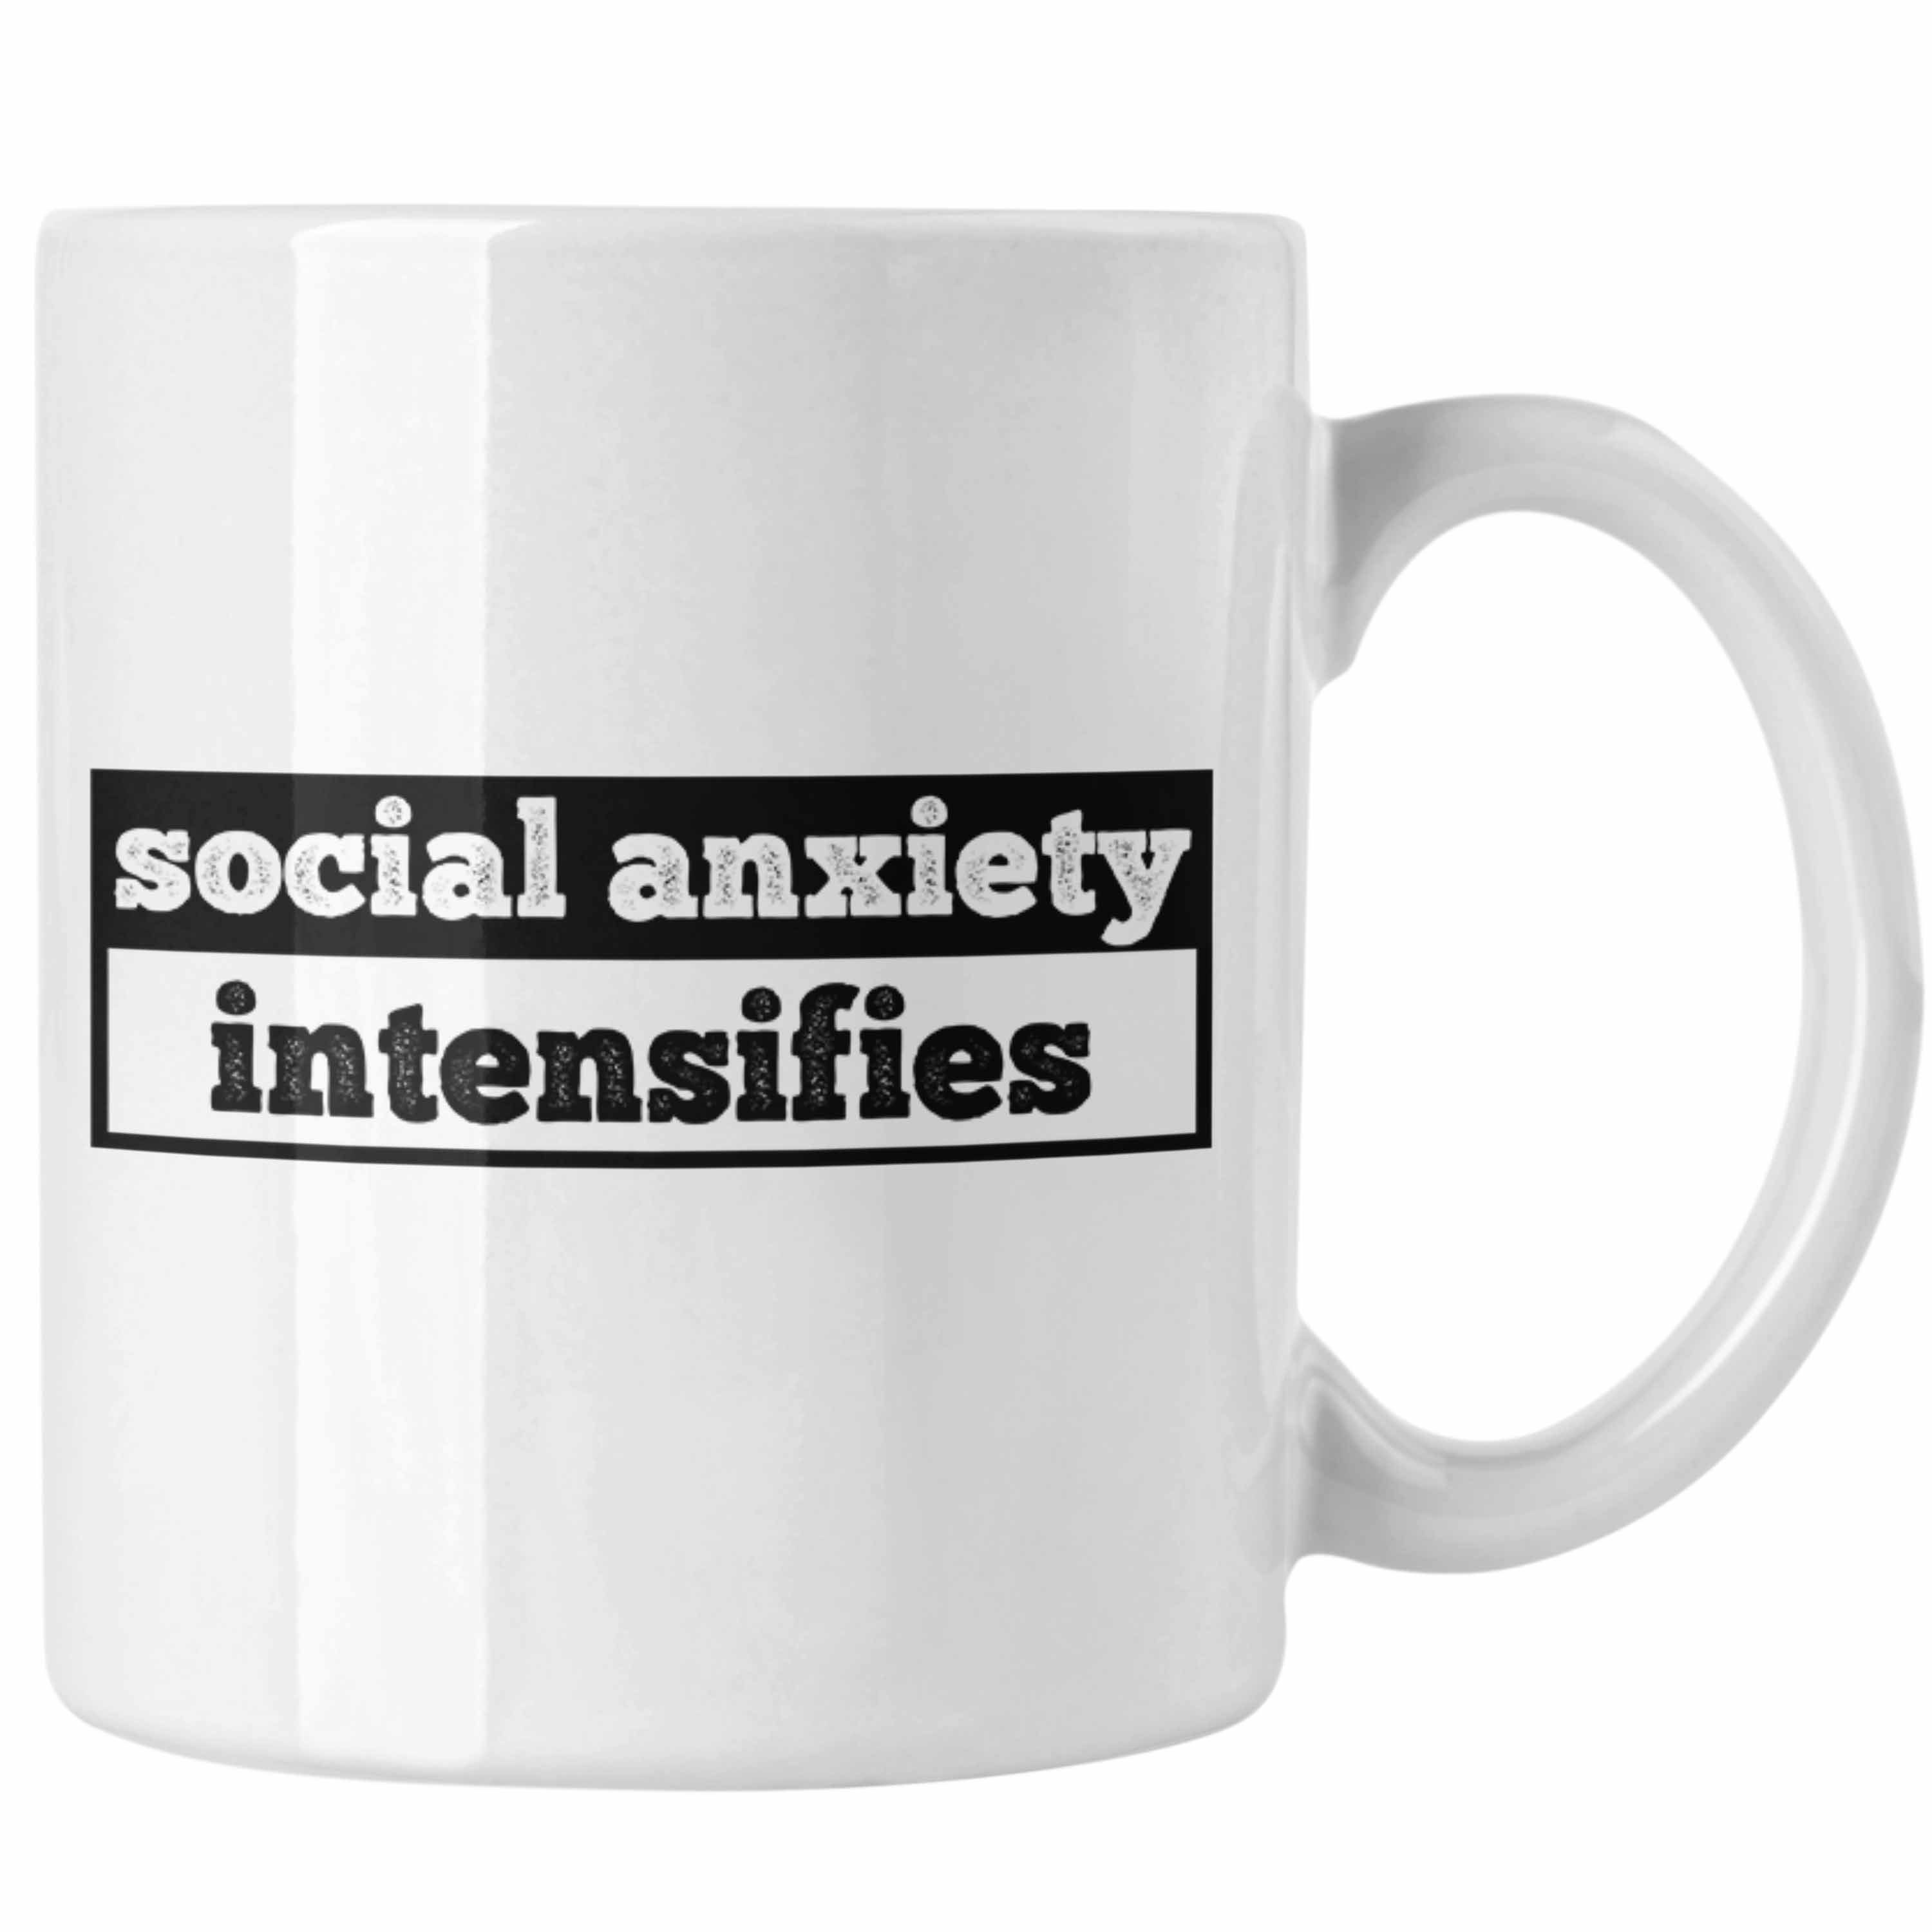 Trendation als "Social Intensifies" Anxiety für Introve Spruch Geschenk Tasse mit Weiss Tasse